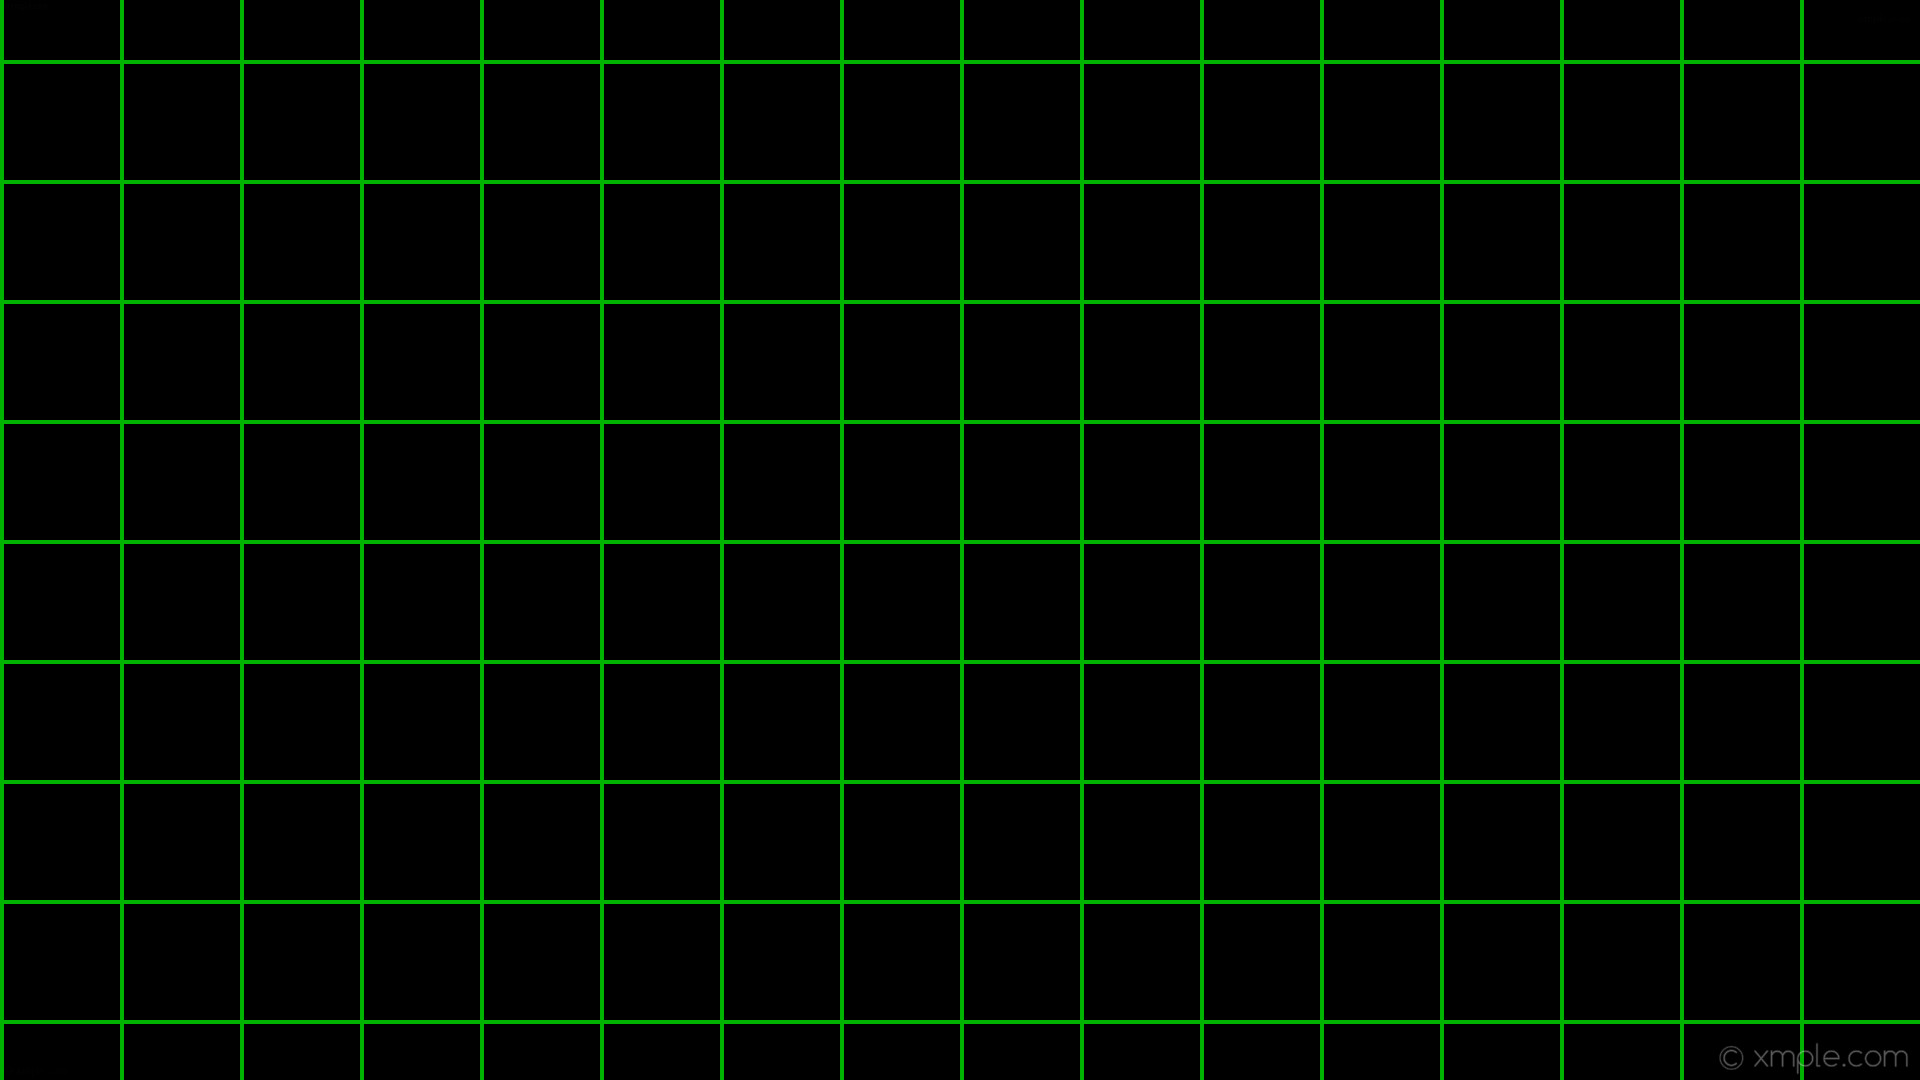 1920x1080 wallpaper graph paper black green grid lime #000000 #00ff00 0Â° 4px 120px